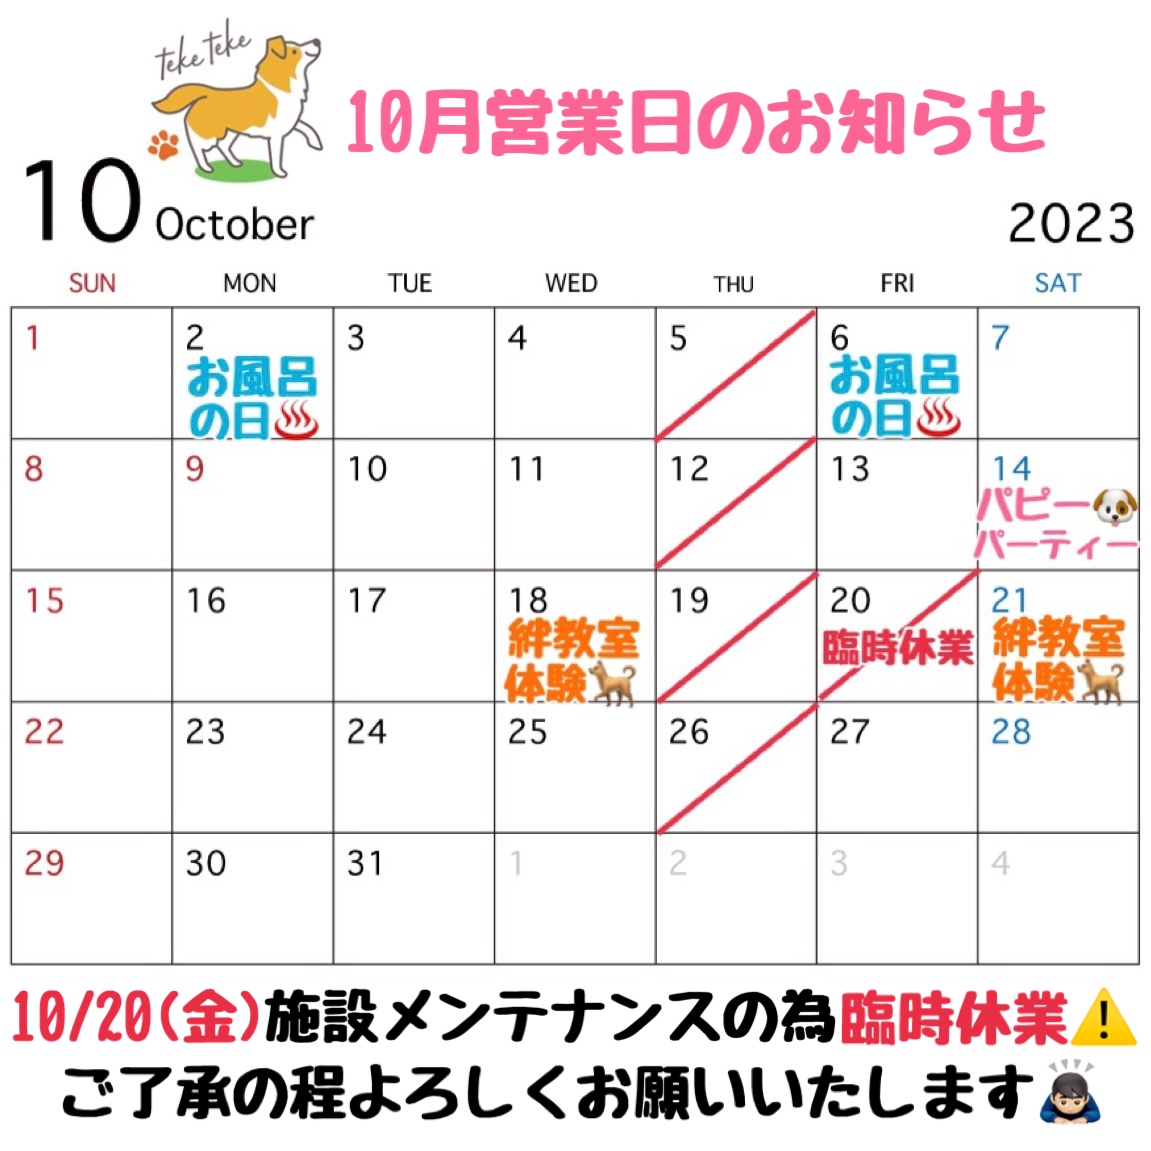 10月営業日カレンダーのお知らせです🗓